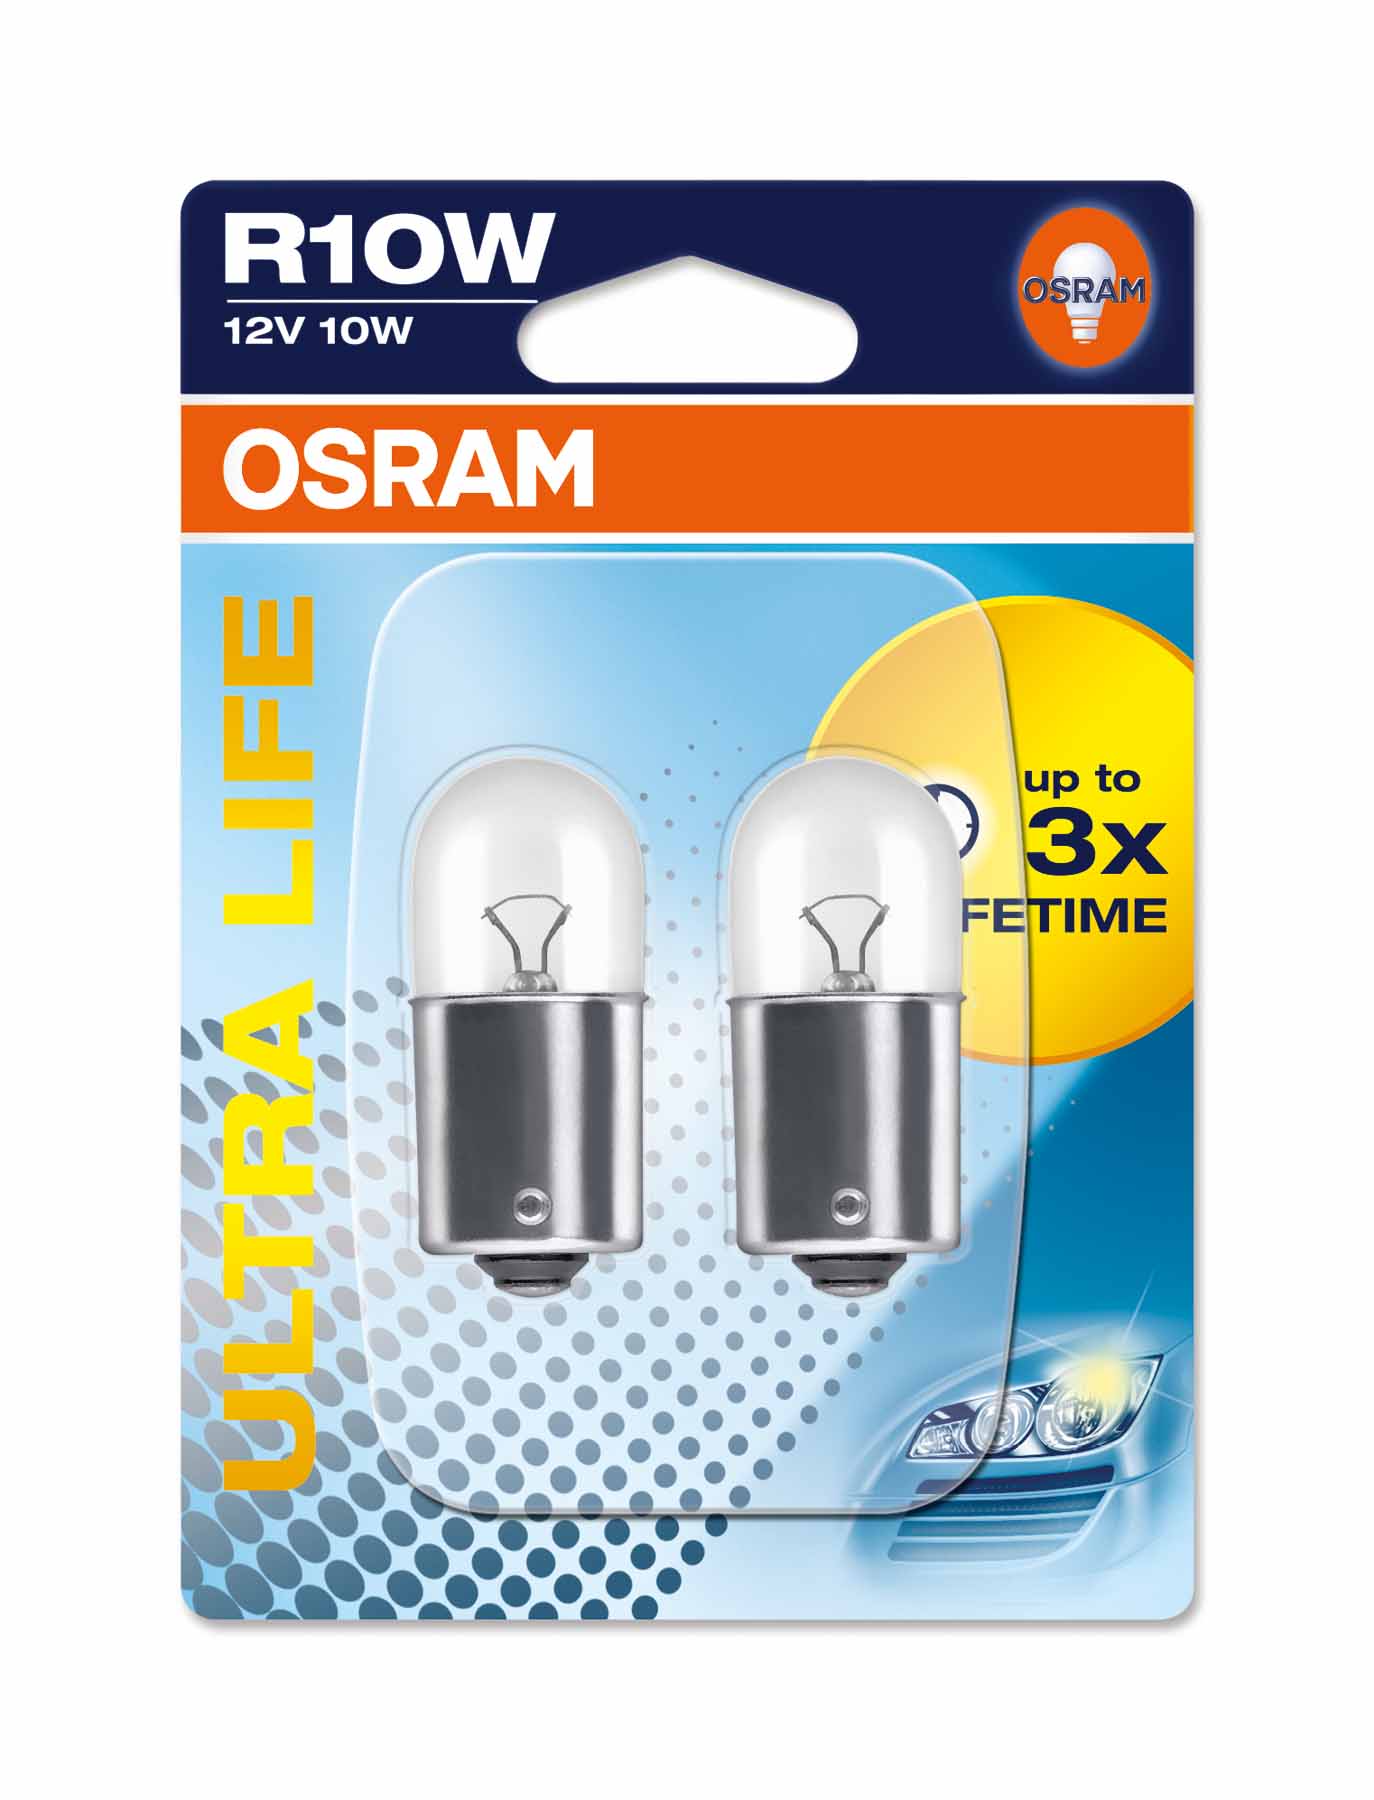 Ampoule R10W Ultra Life 10W [12V] (2 pièces), avant et arrière, 12 V OSRAM